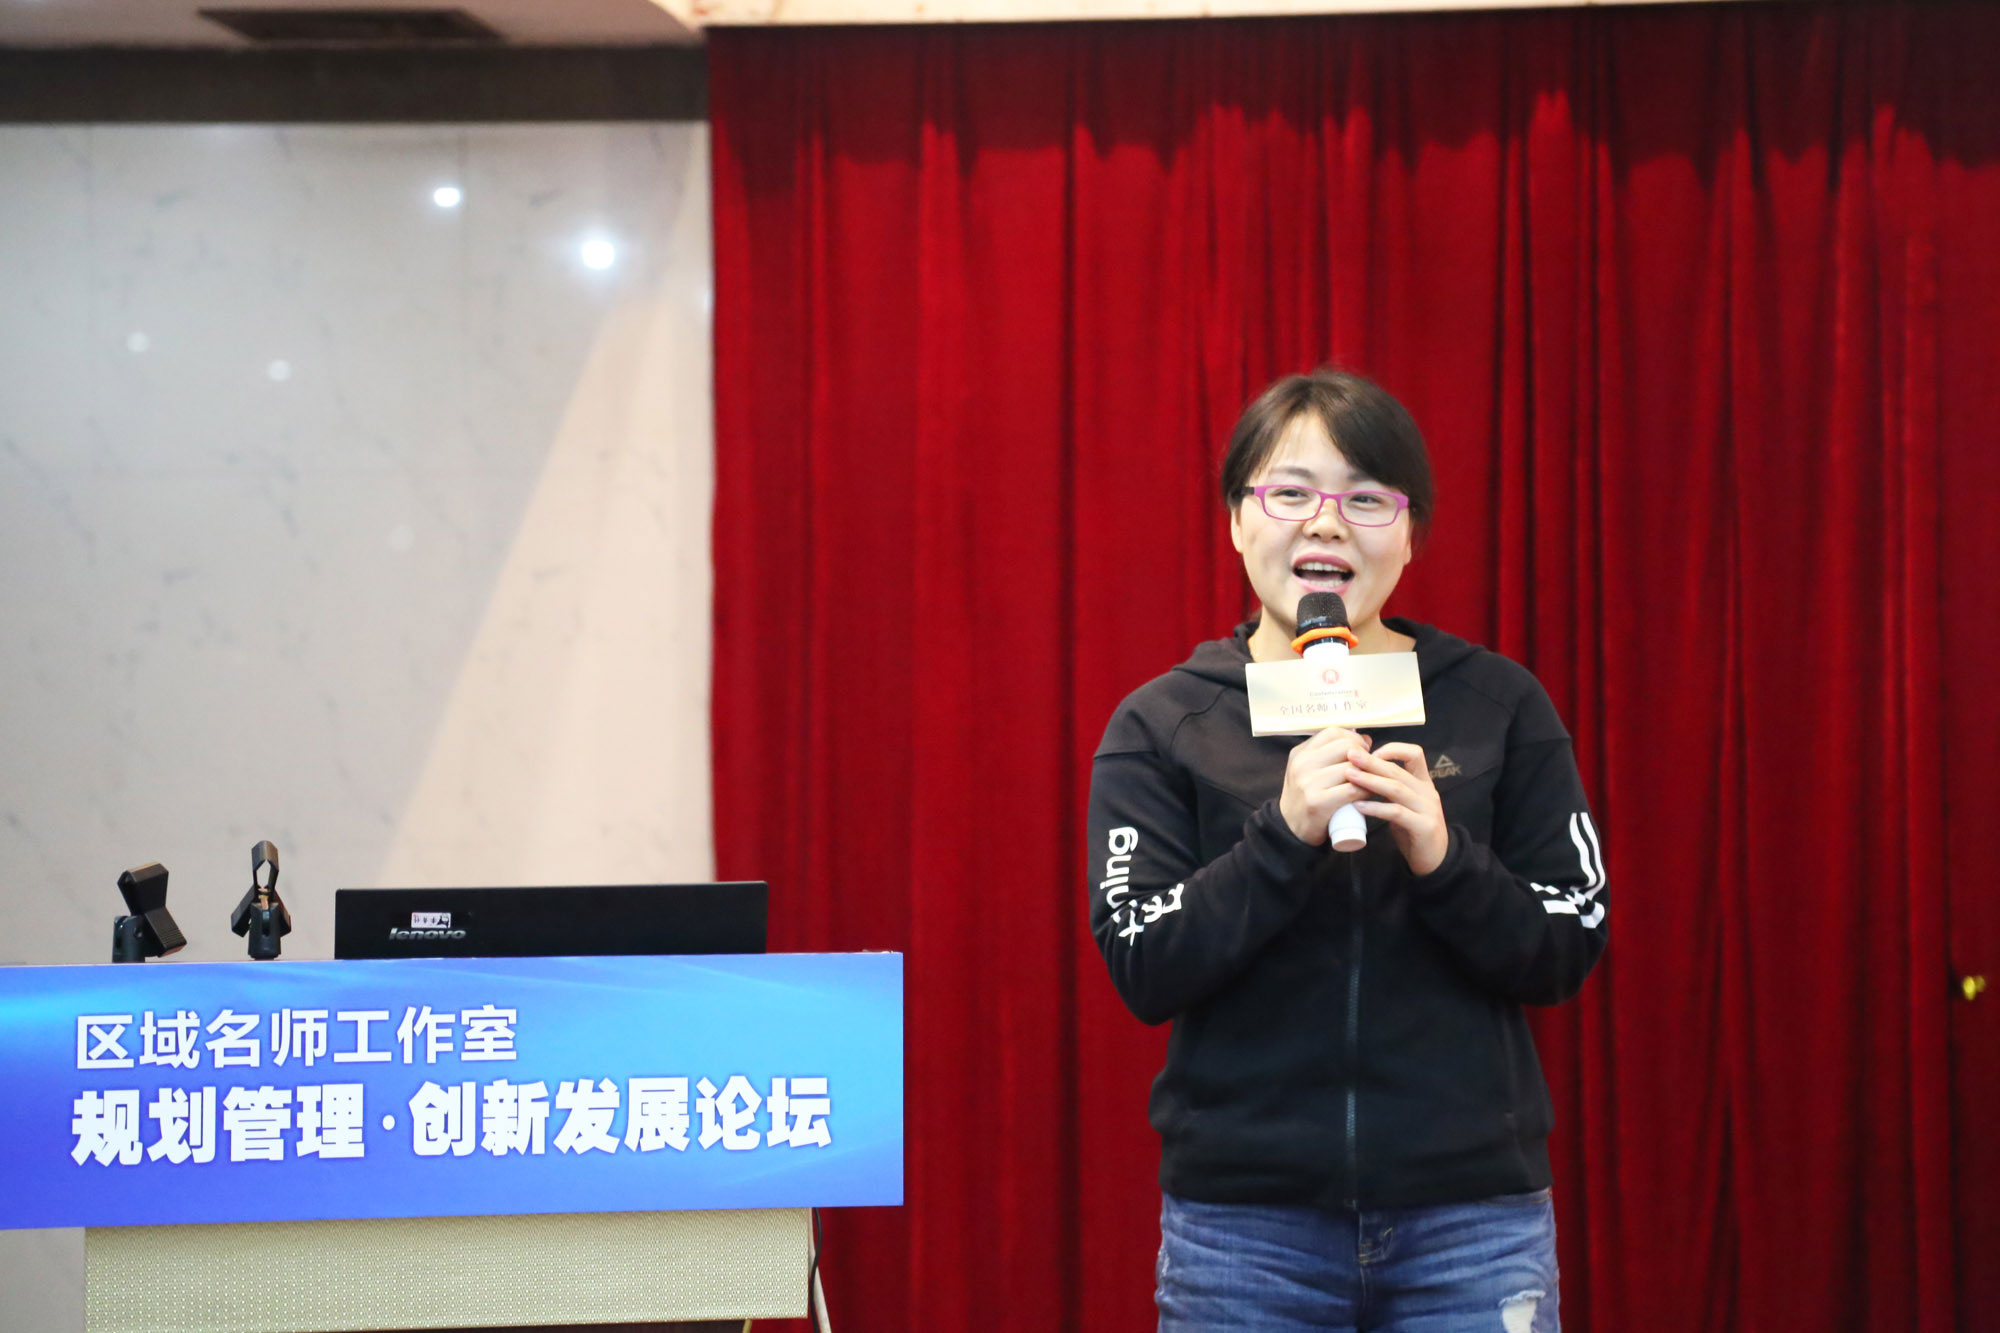 河北民族师范学院代表着重介绍了河北省级名师培训与研修的理念和做法。